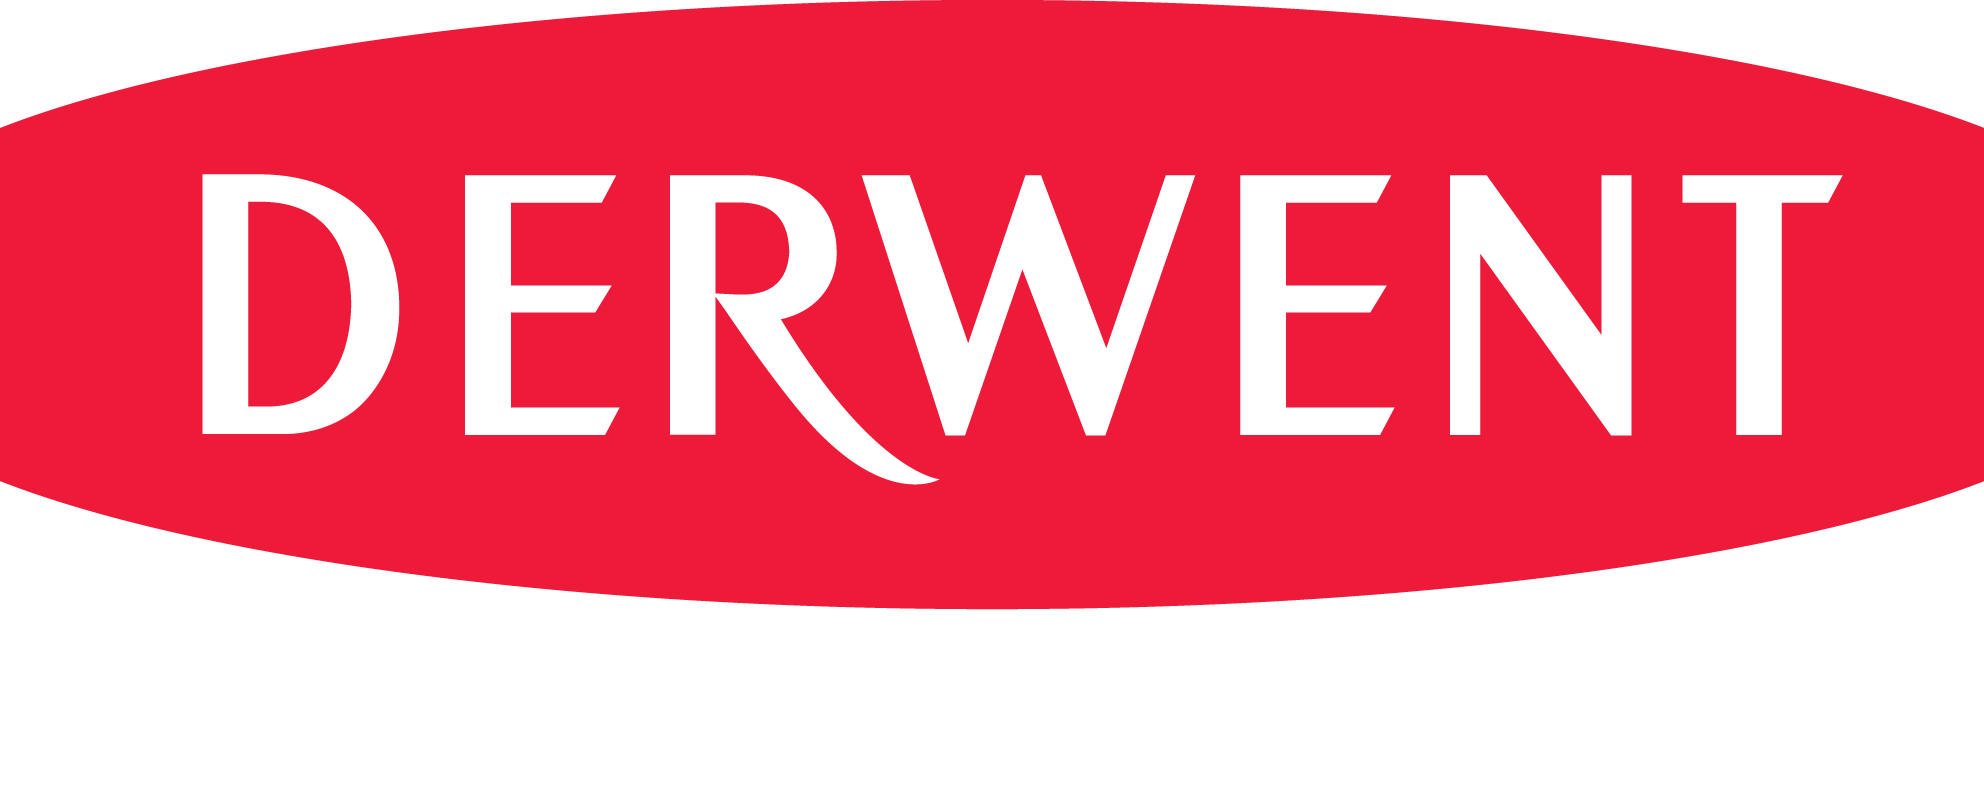 Derwent Logo - Derwent